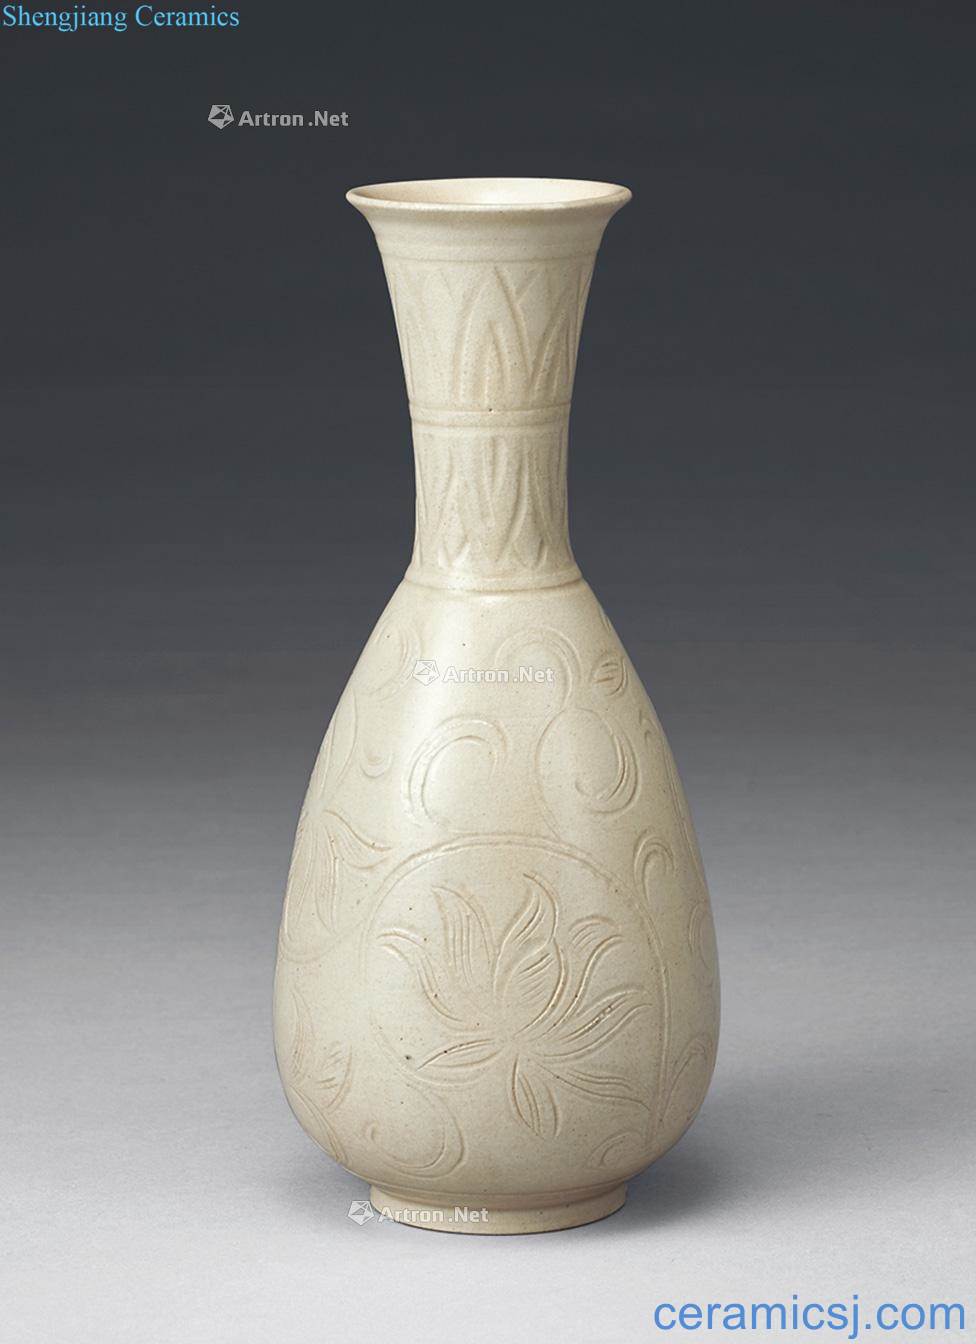 The song kiln carved flower grain bottle